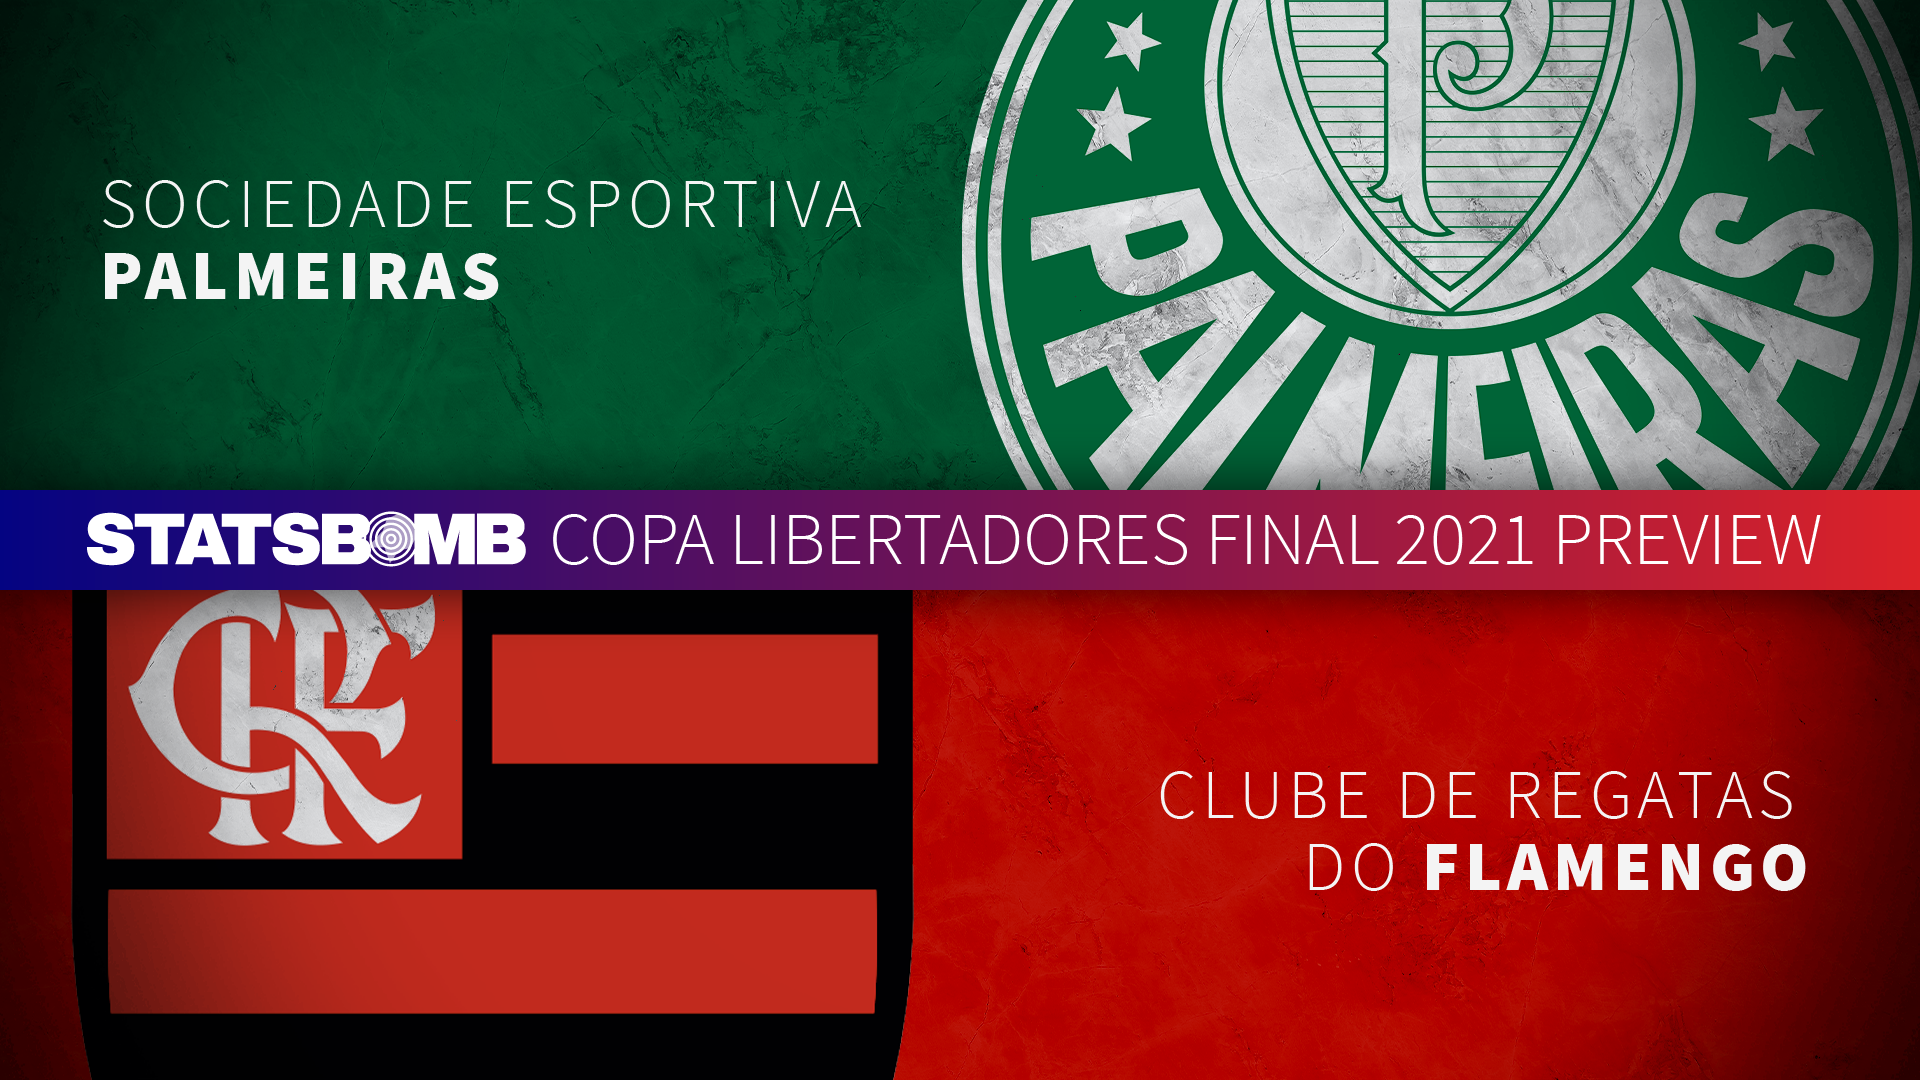 Copa Libertadores 2021 Final Preview: Flamengo vs. Palmeiras